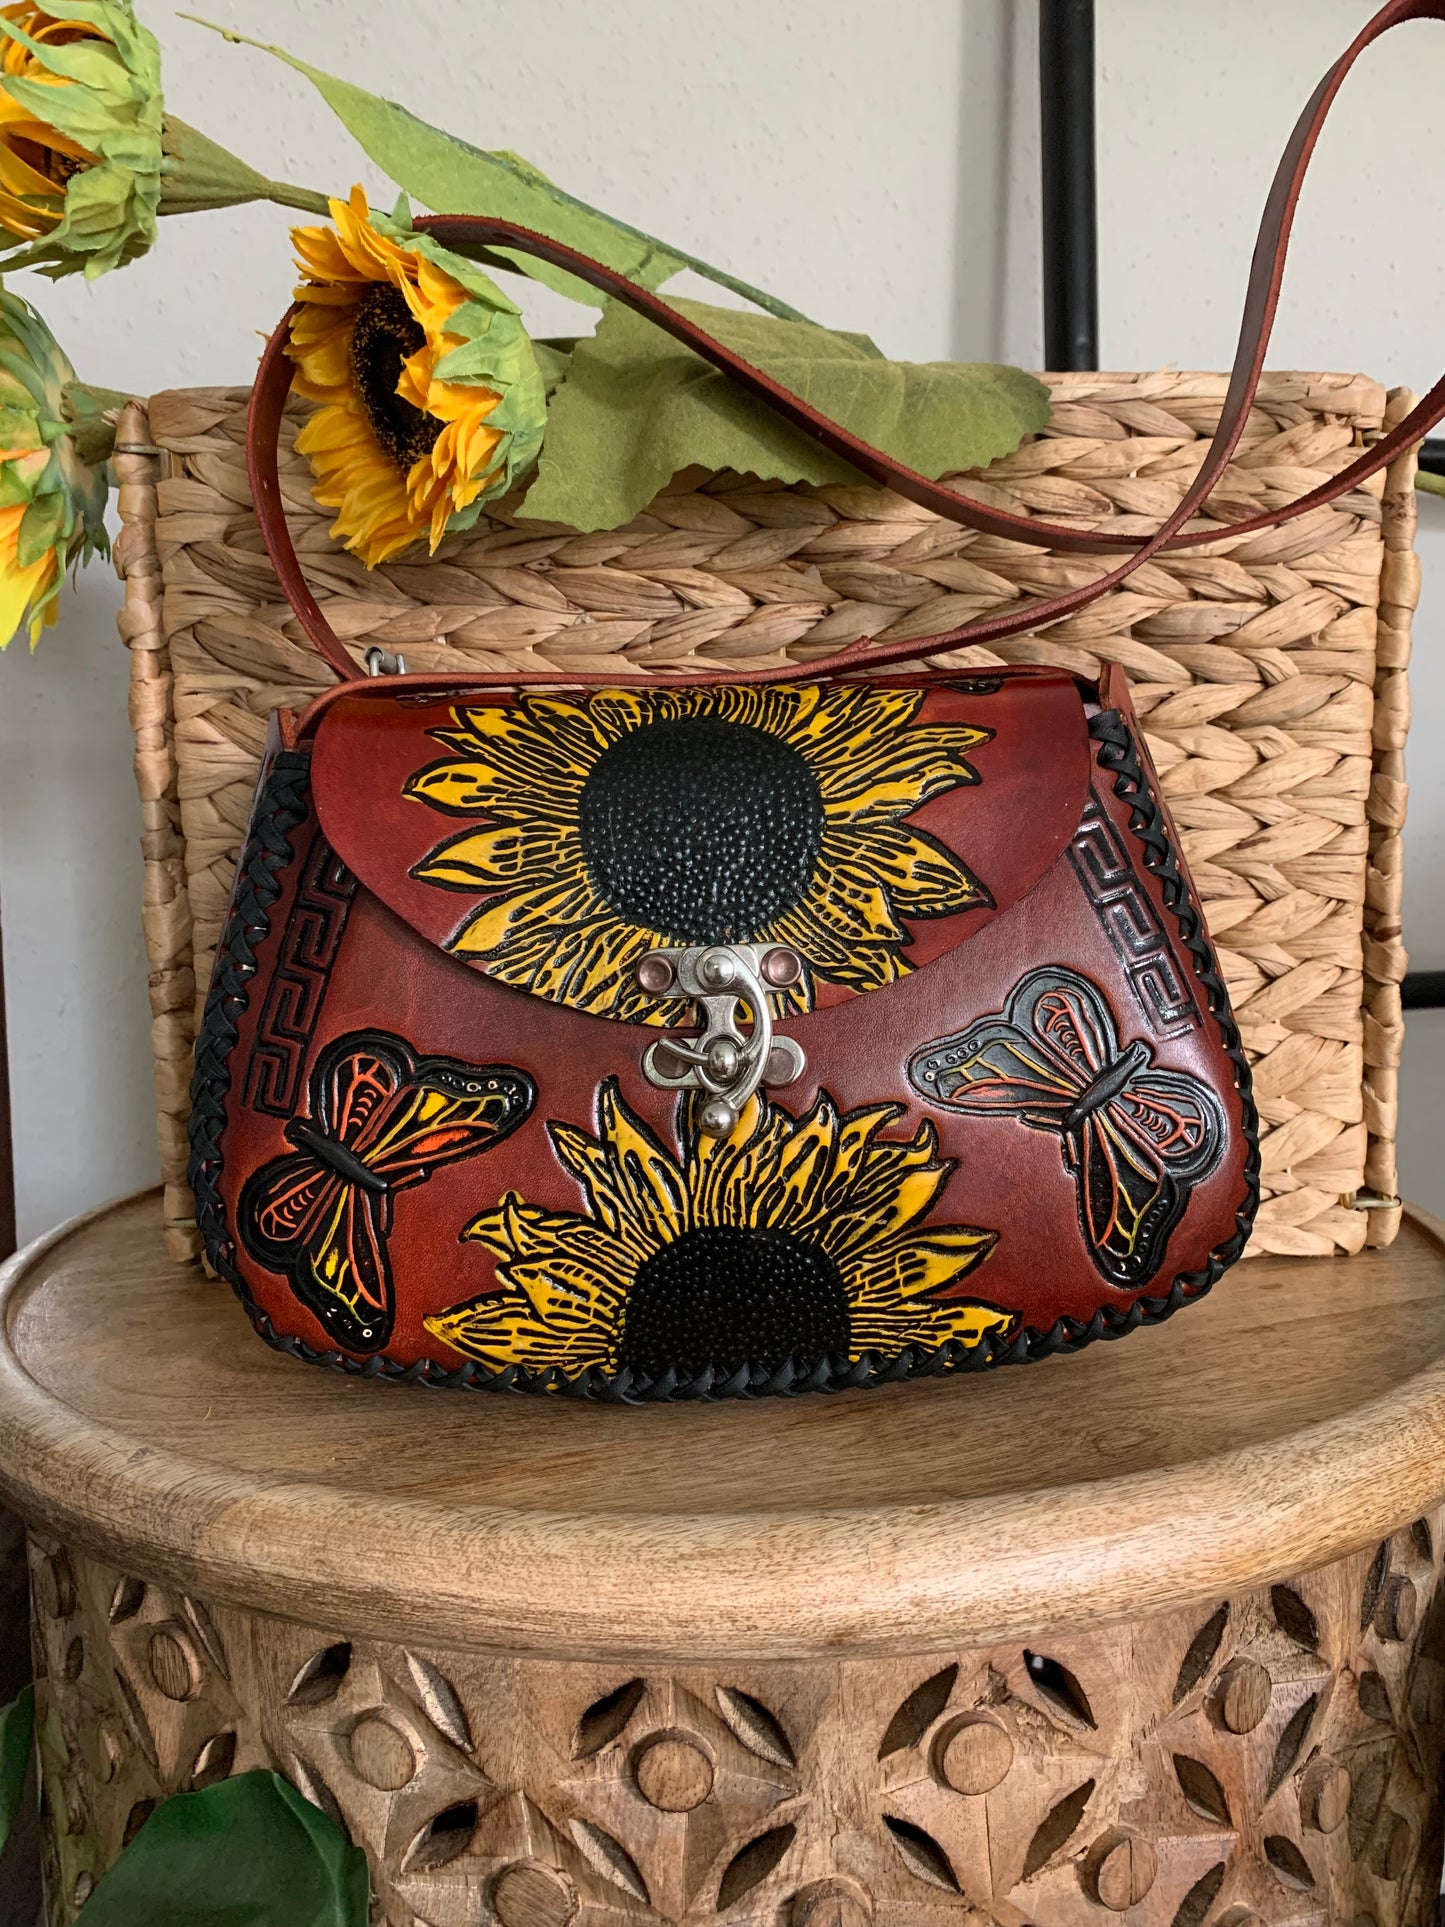 Sunflower Tooled Leather Handbag